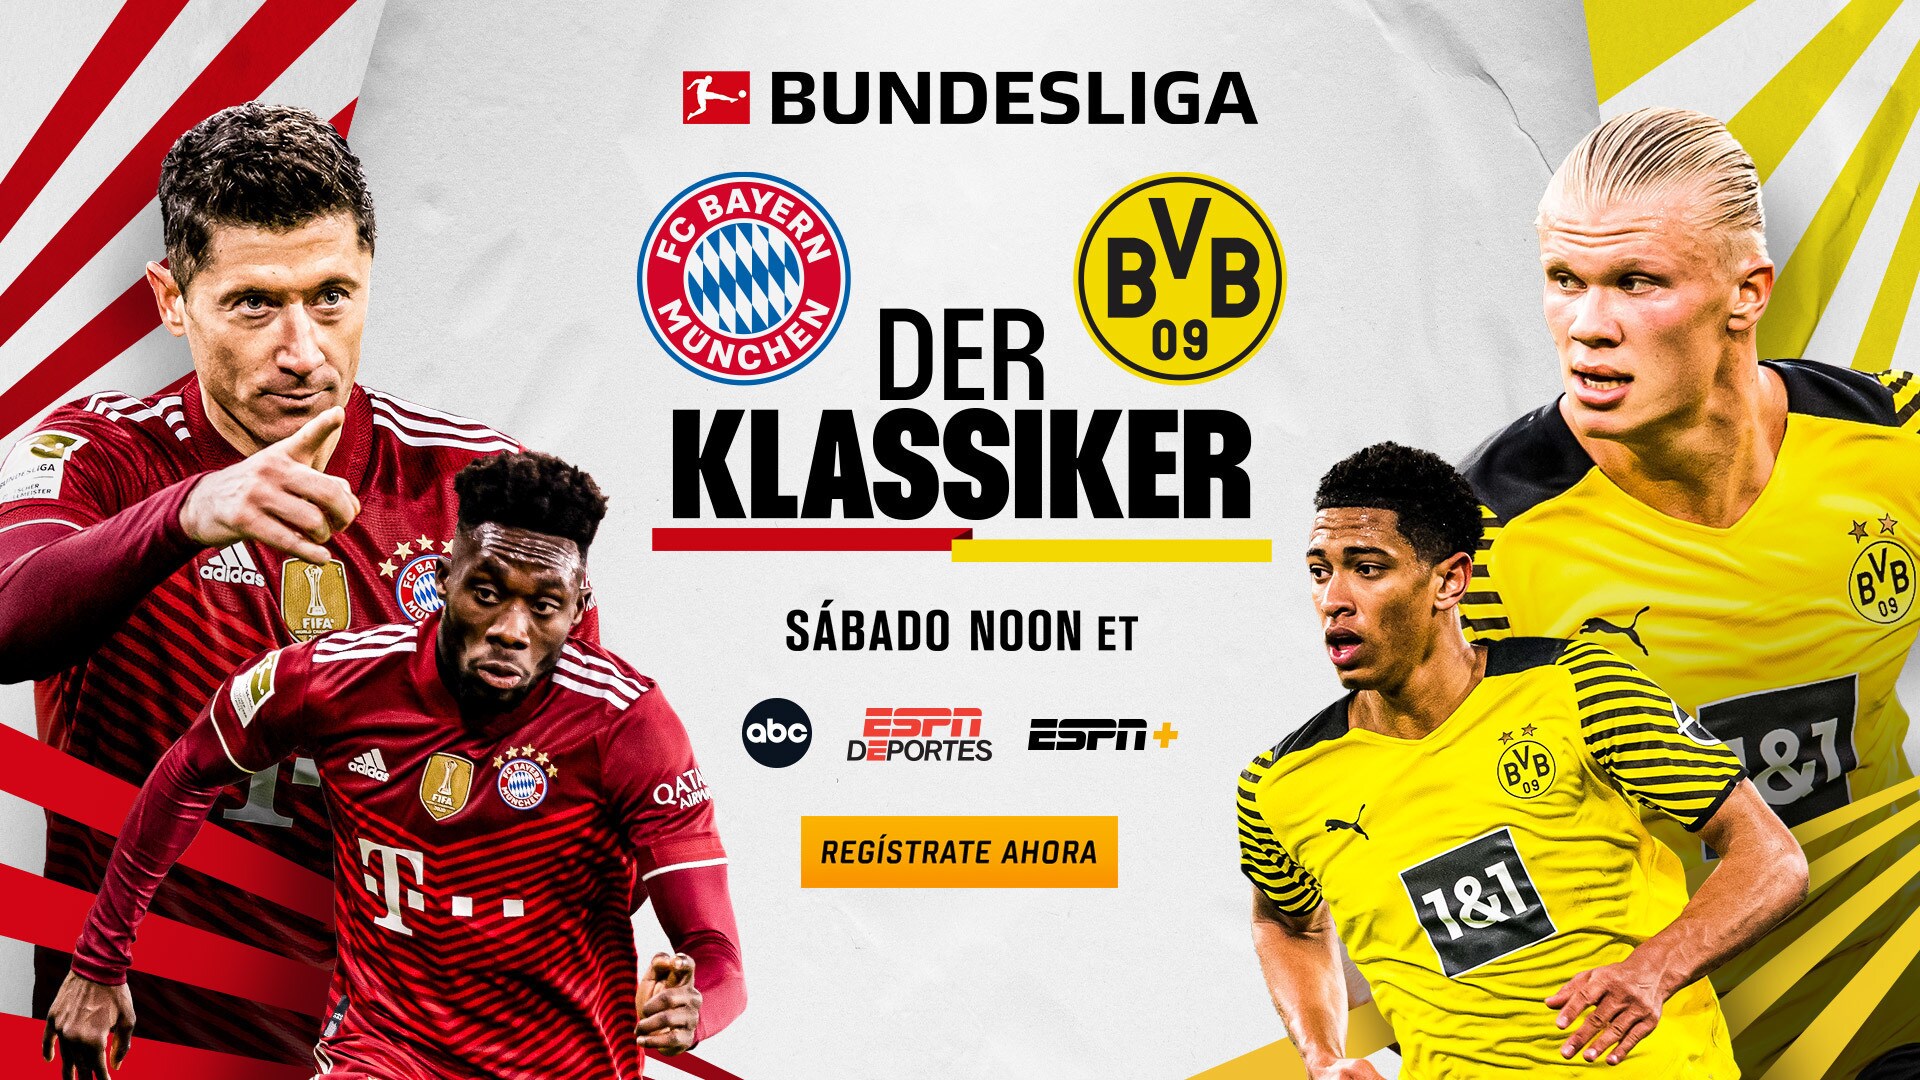 ABC, ESPN+ and ESPN Deportes Present Bundesliga’s Der Klassiker on Saturday, April 23 at 12:30 p.m. ET